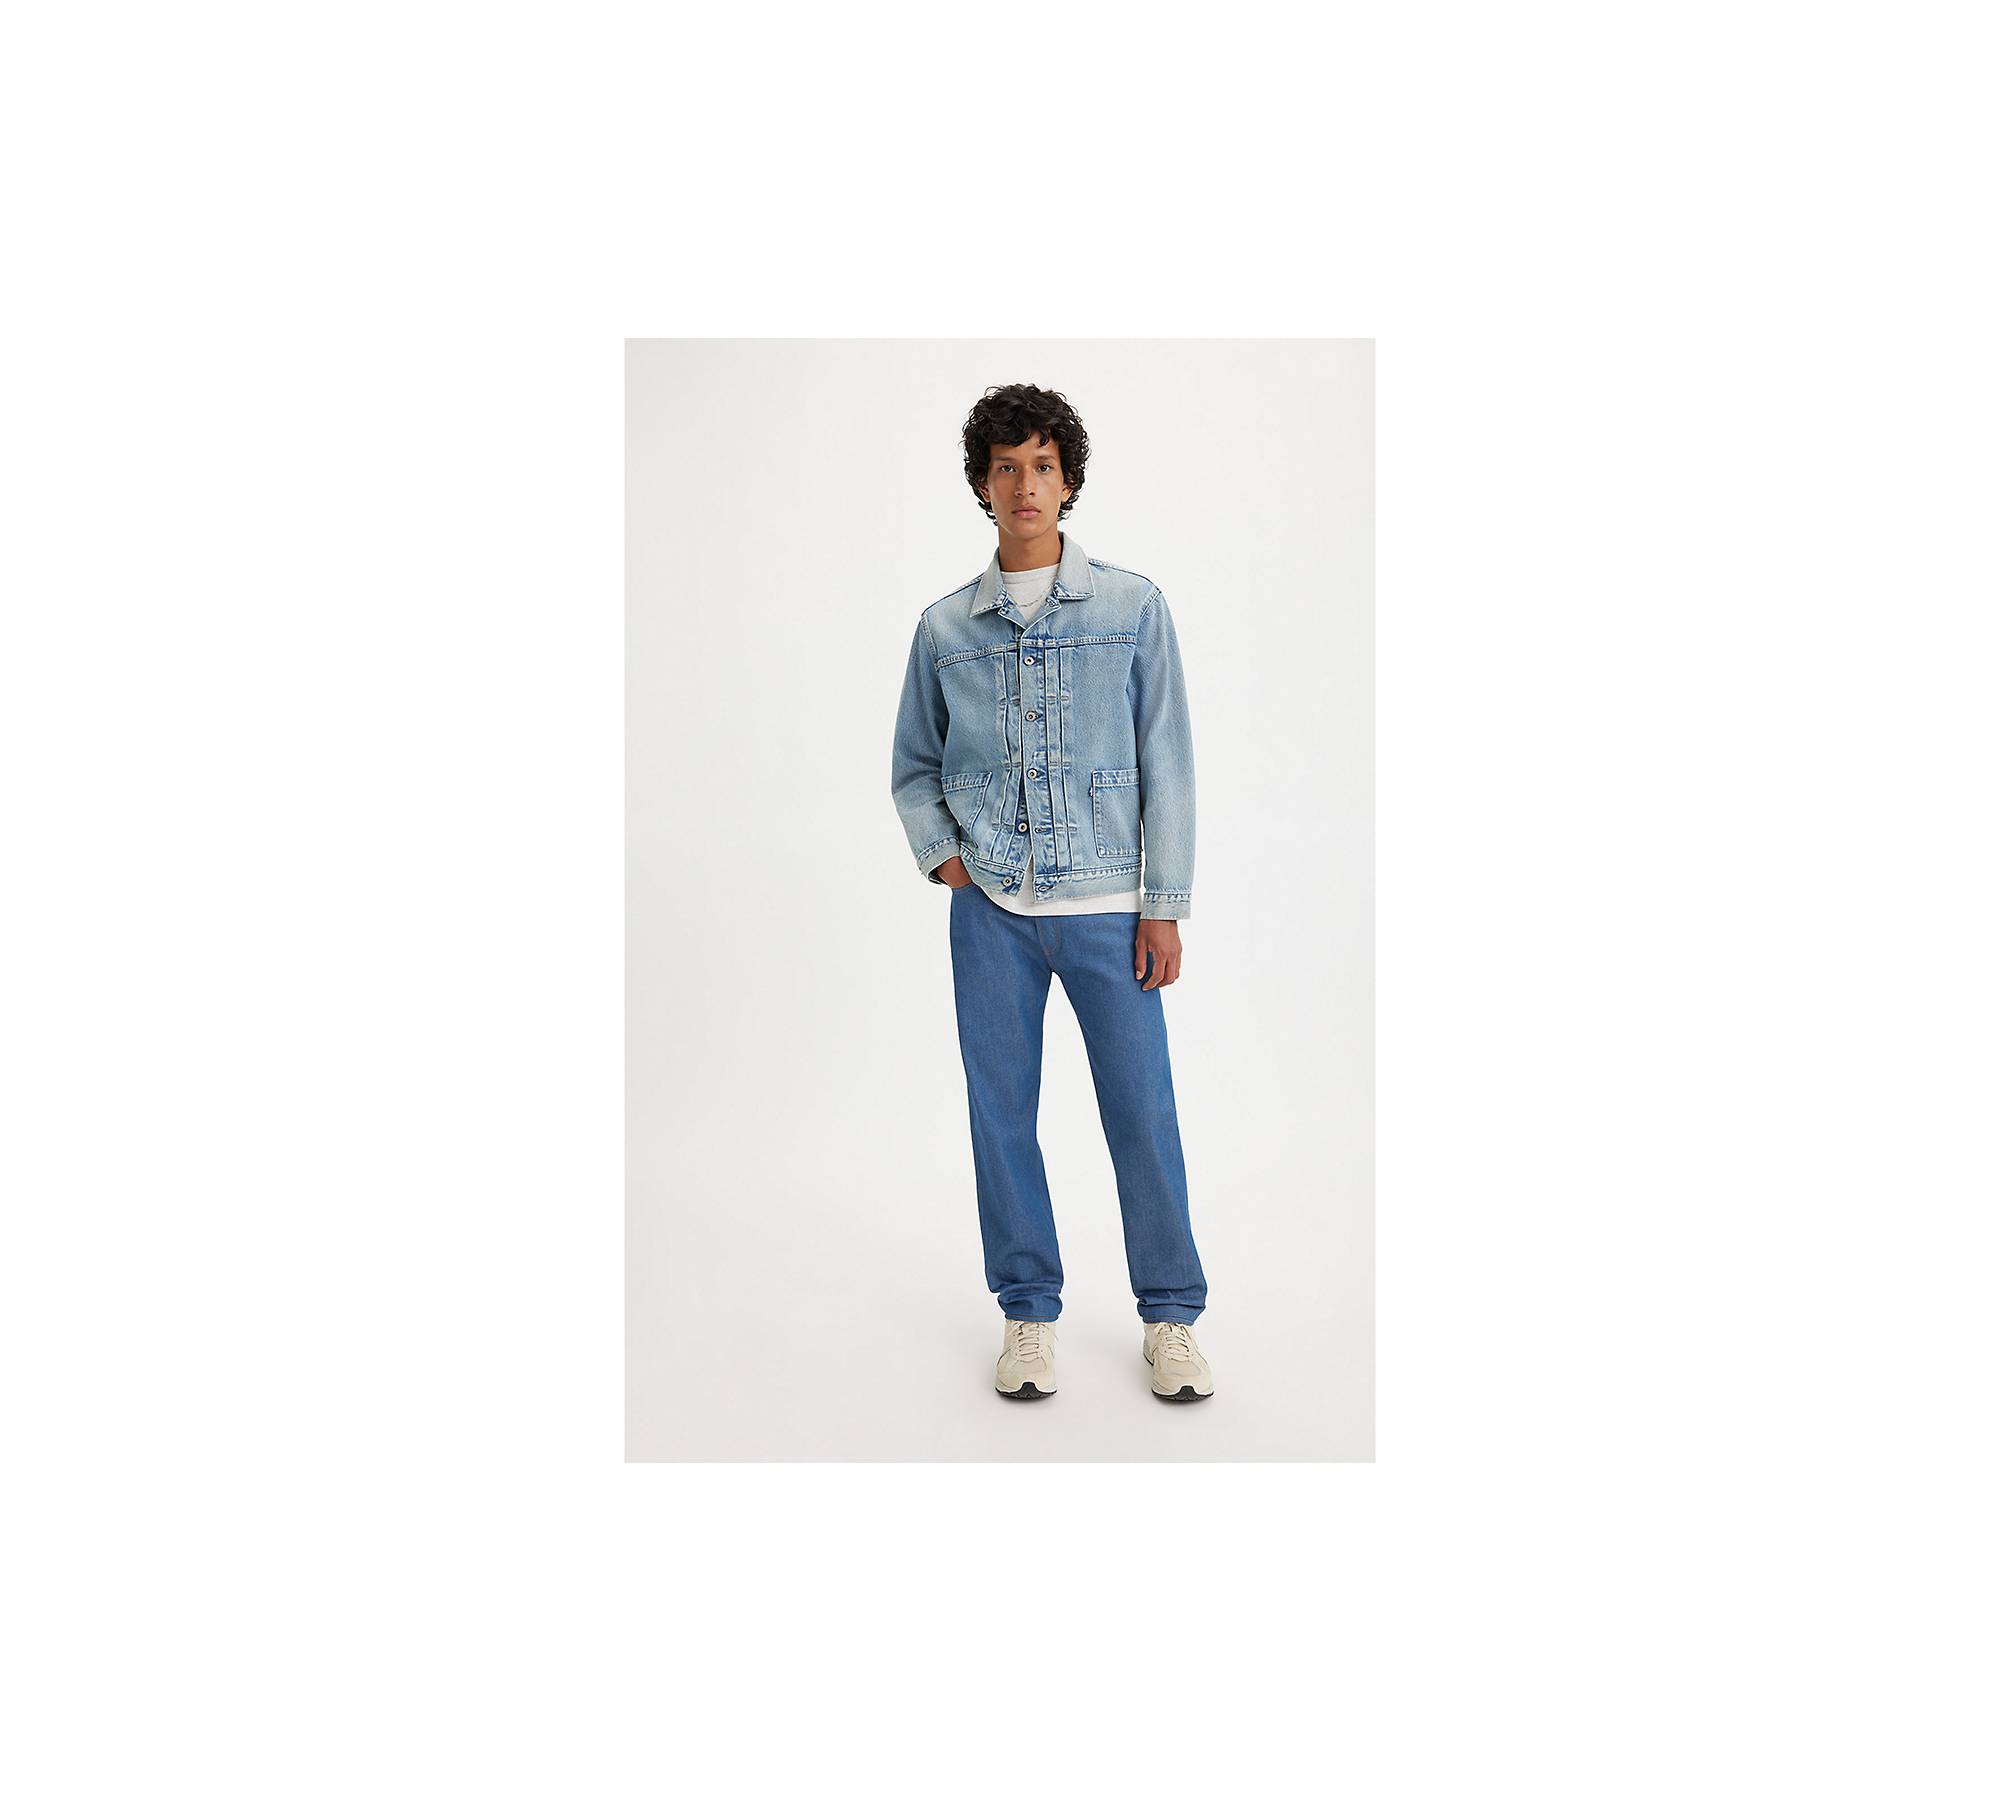 1980s 501® Original Fit Selvedge Men's Jeans - Medium Wash